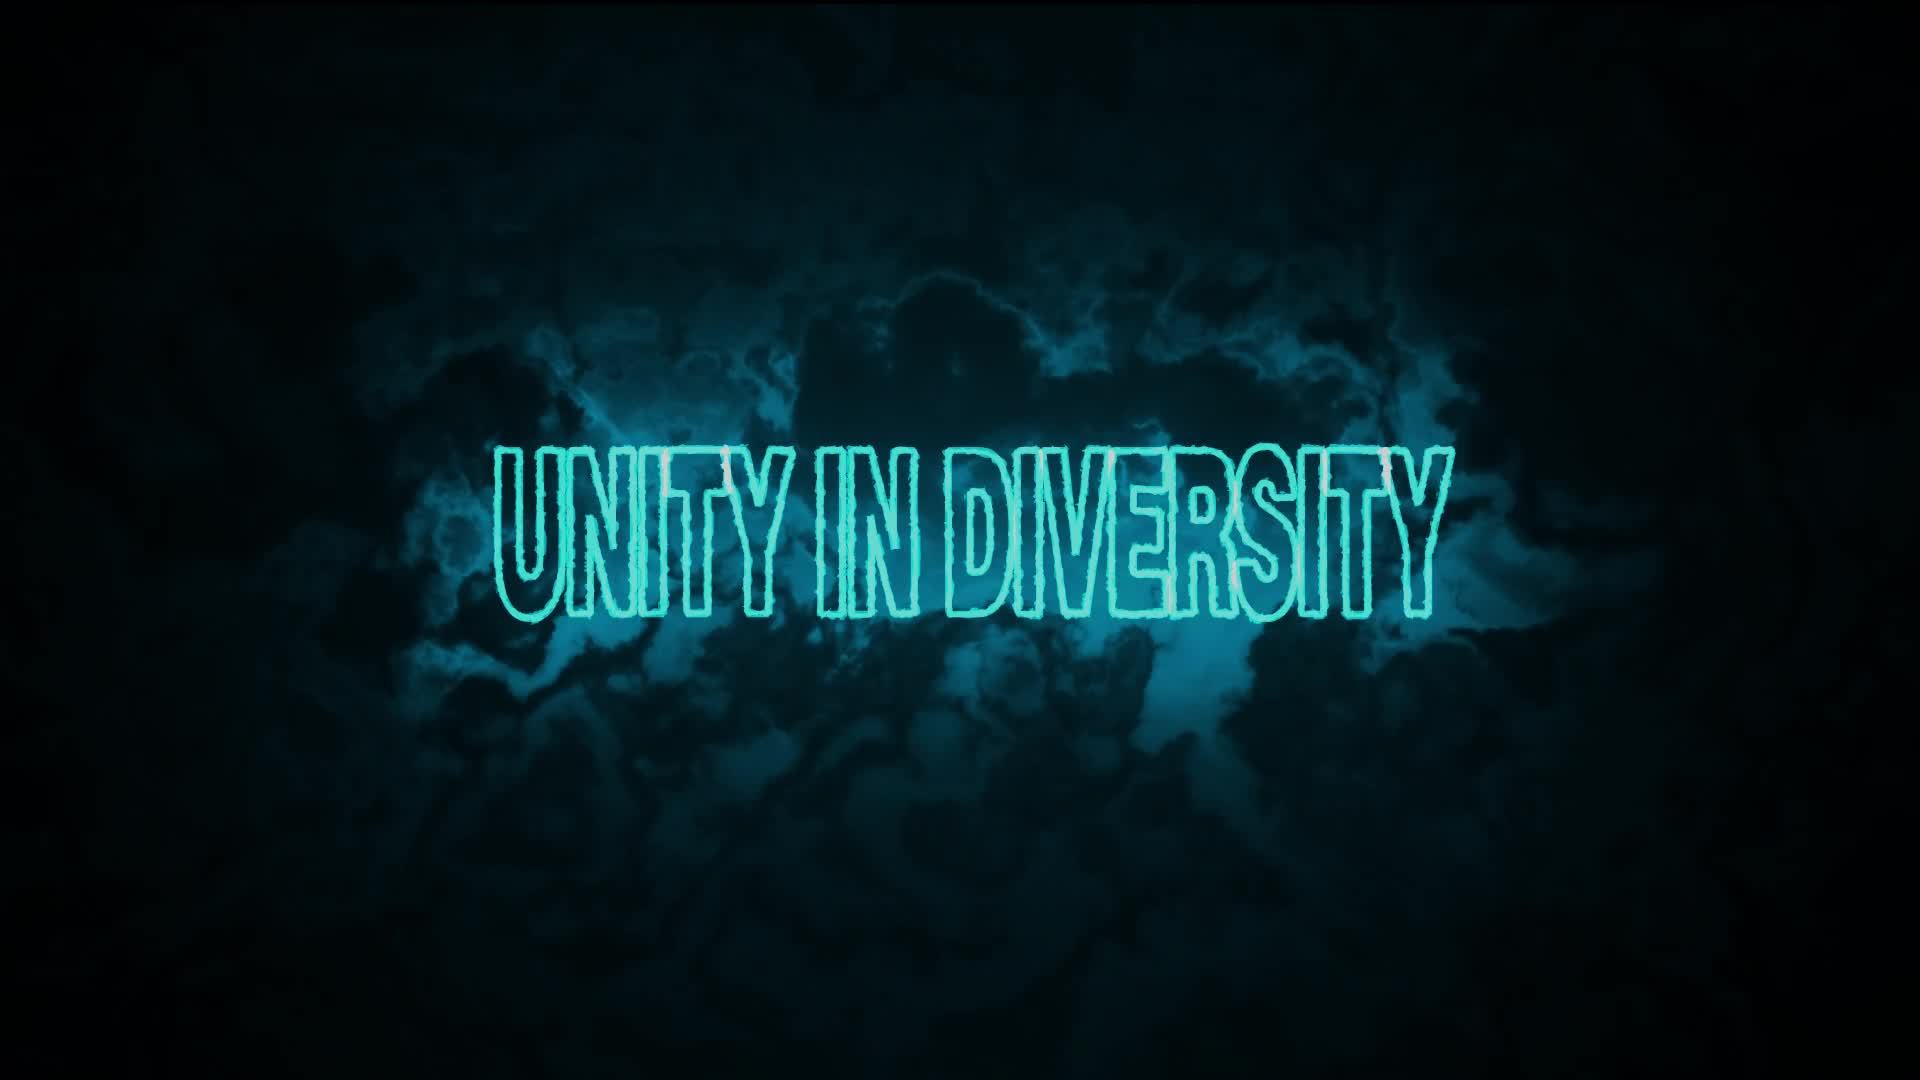 Sự đa dạng là điều quý giá và độc đáo. Unity in Diversity là một khái niệm thú vị để khám phá. Hãy xem hình ảnh để cảm nhận được sự đa dạng đó.